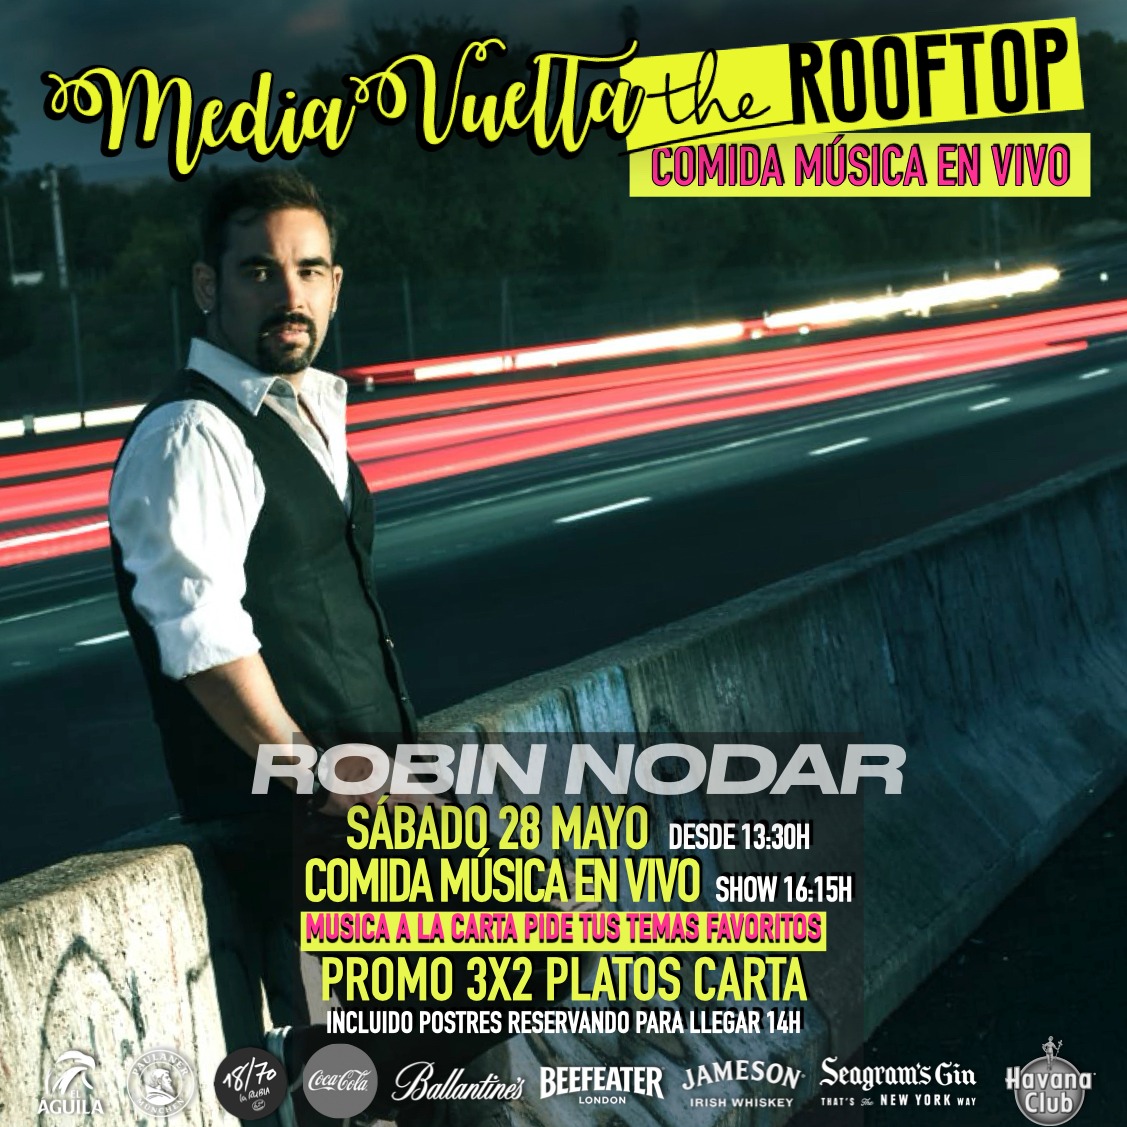 Música de Robin Nodar y Almuerzo en MediaVuelta The Rooftop Majadahonda